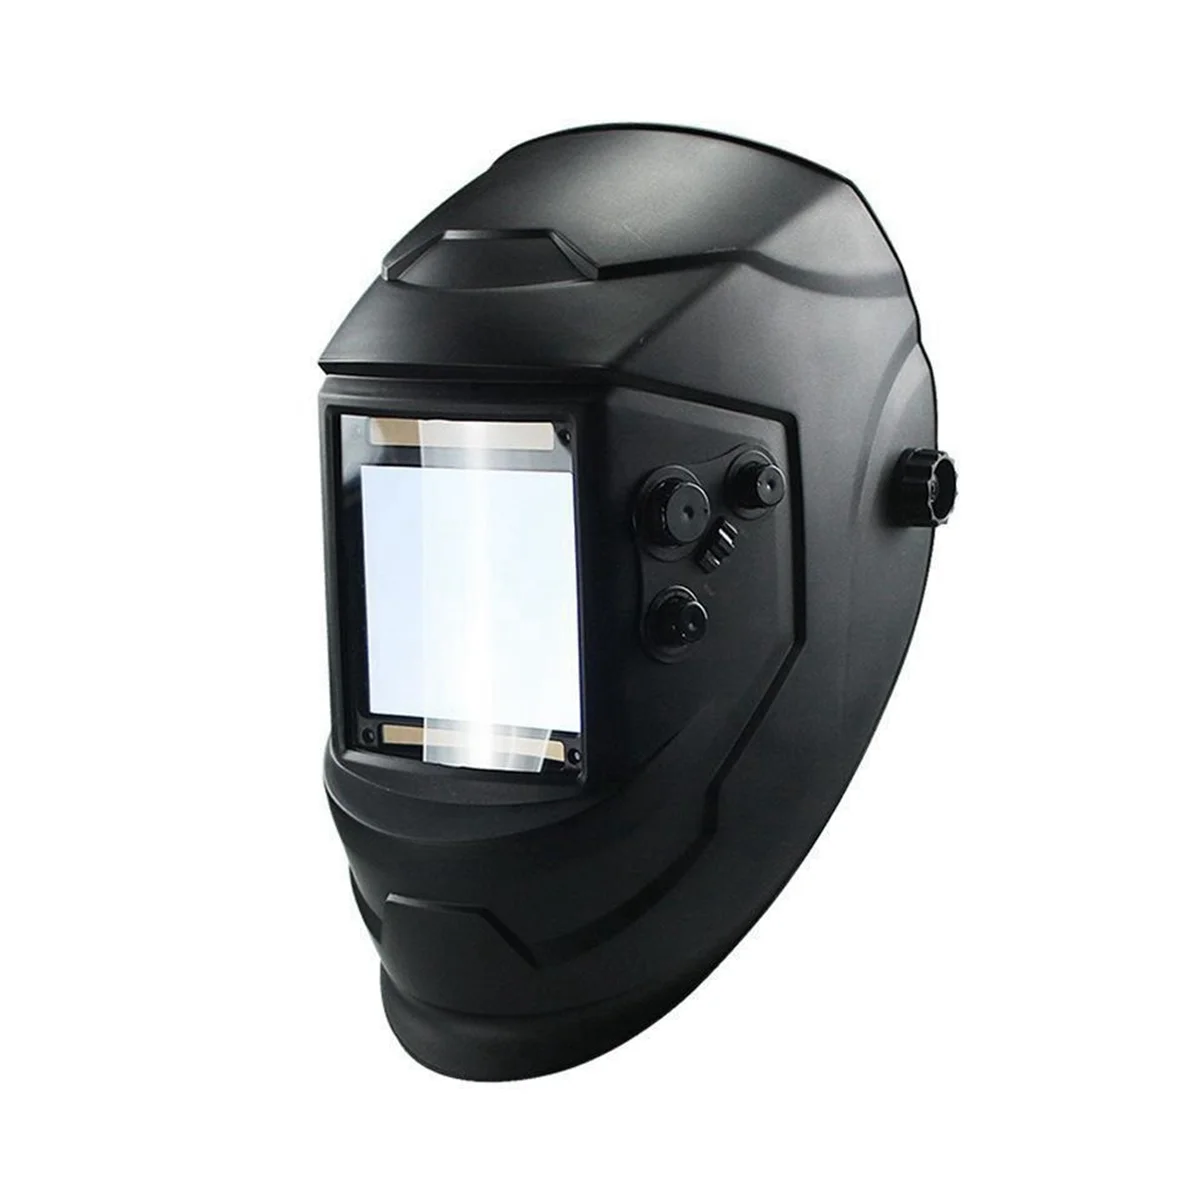 

4 Sensor Welding Helmet Auto Protective Lens Helmets Auto Darkening Adjustable Range Electric Welder Mask